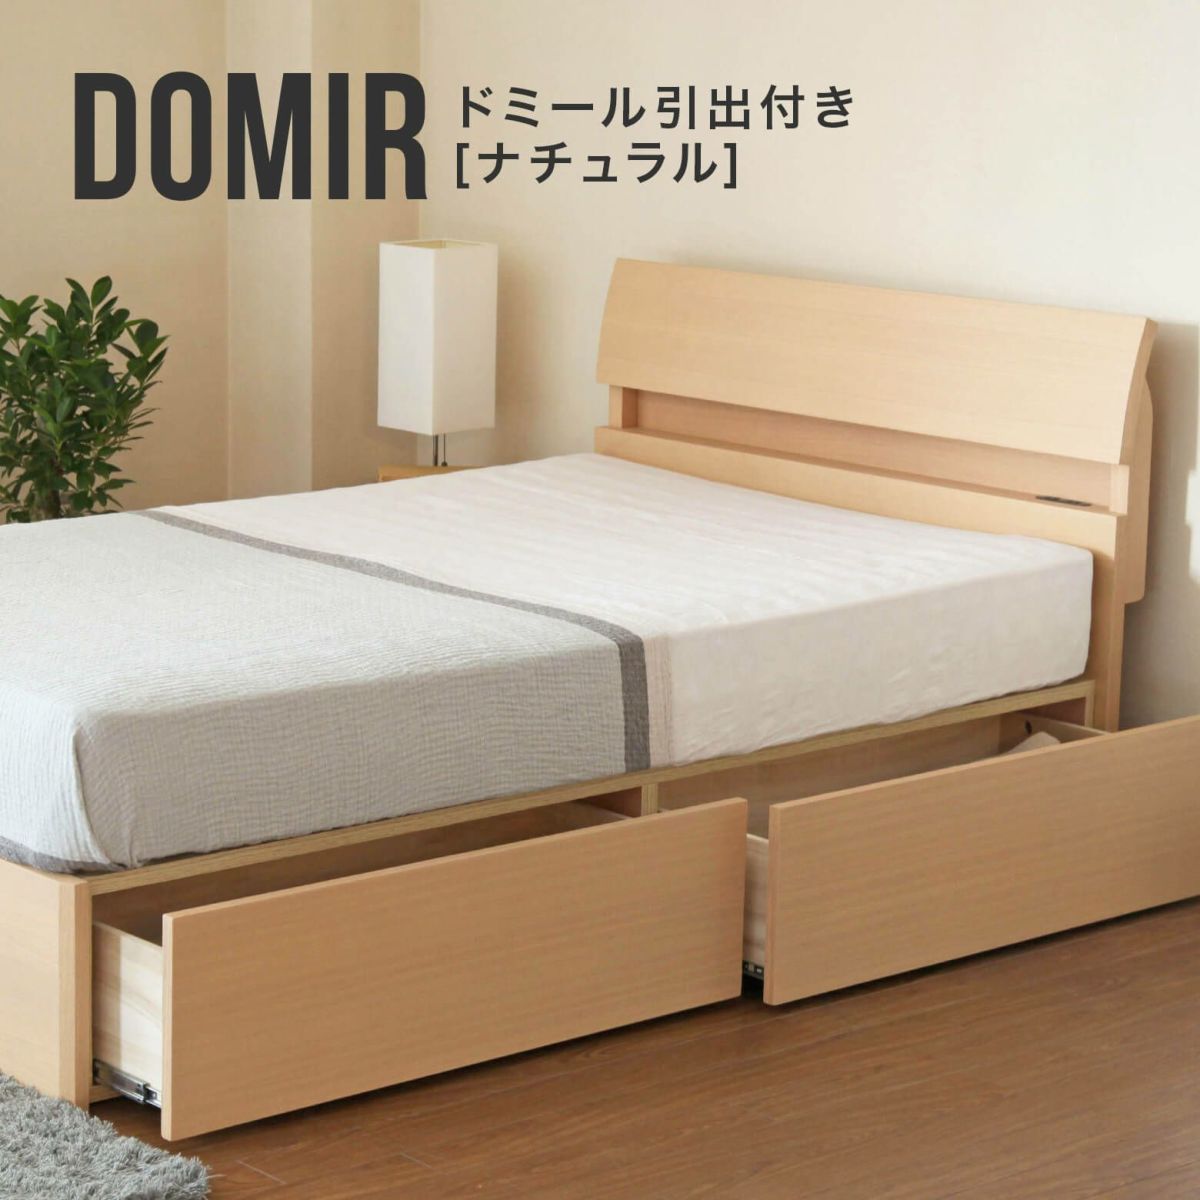 ドミール（引き出し付）[ナチュラル] [シングルサイズ]収納付き | 日本最大級のベッド専門店 ビーナスベッド